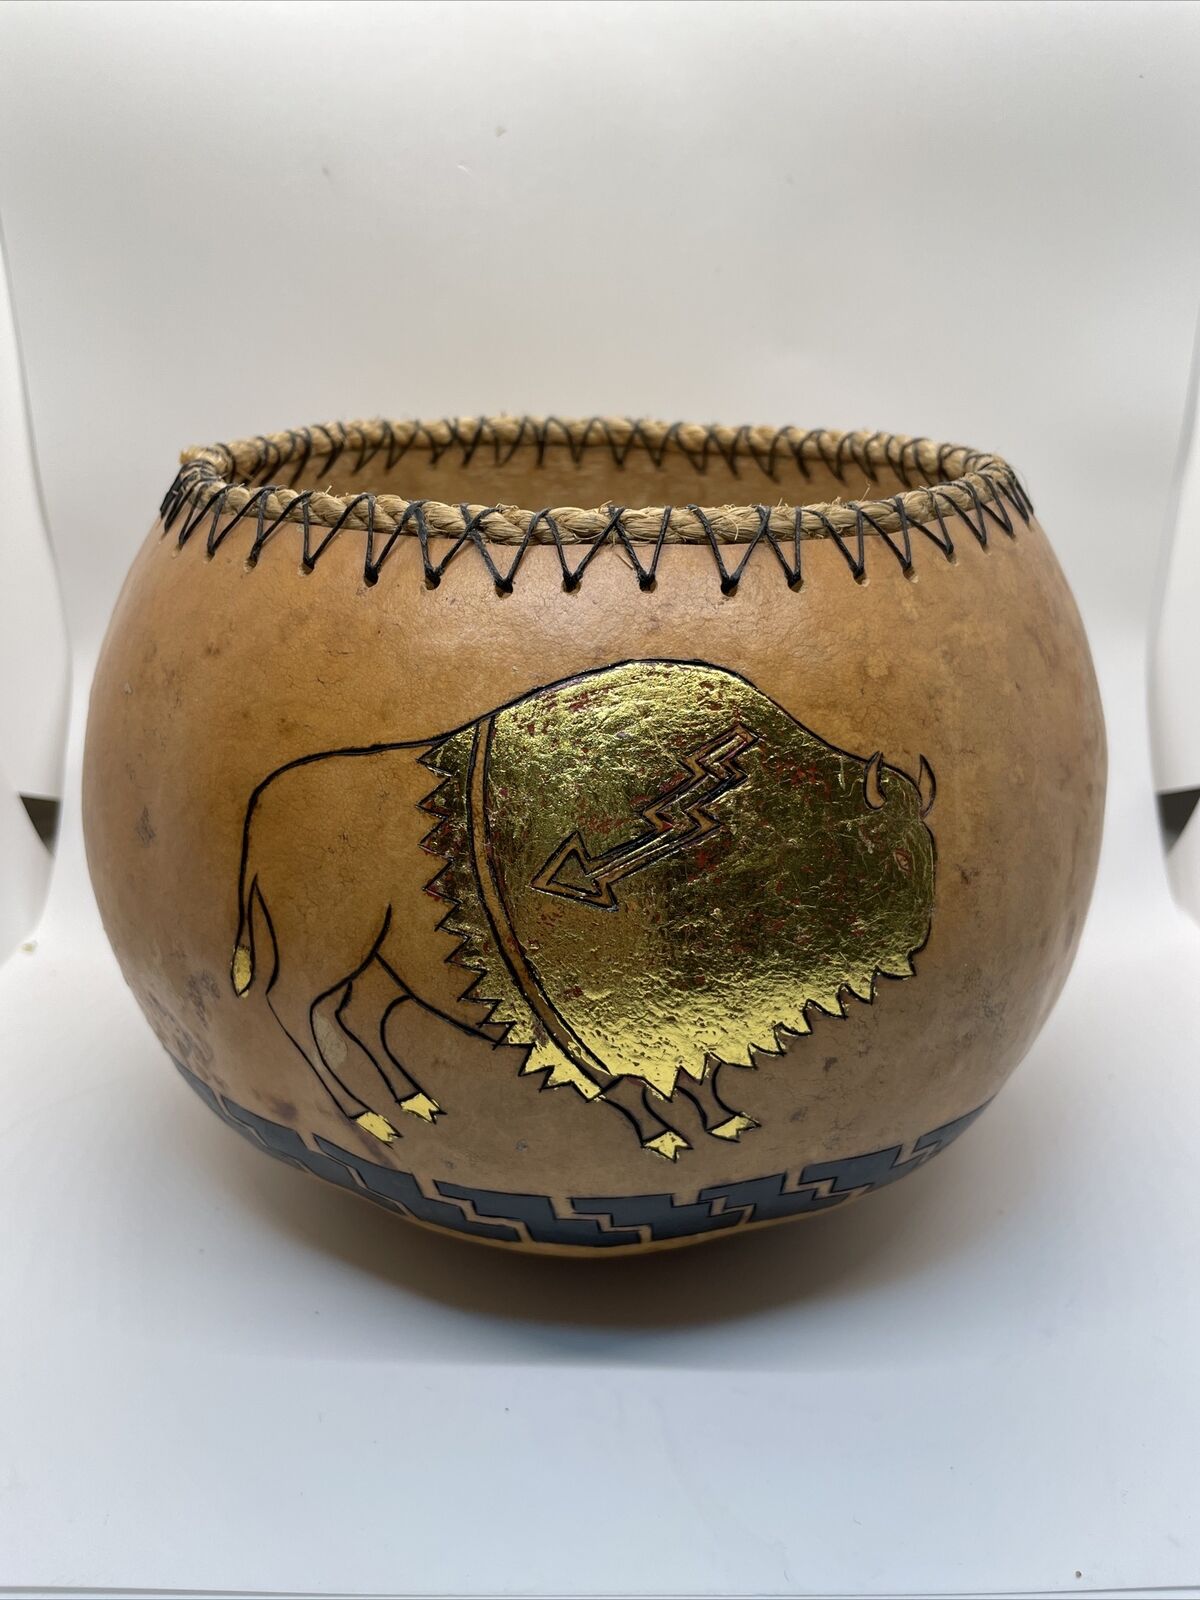 VTG Native American Carved  Gourd Bowl Gold Bison Rope Top Signed RnD 97 6”Tx9.5